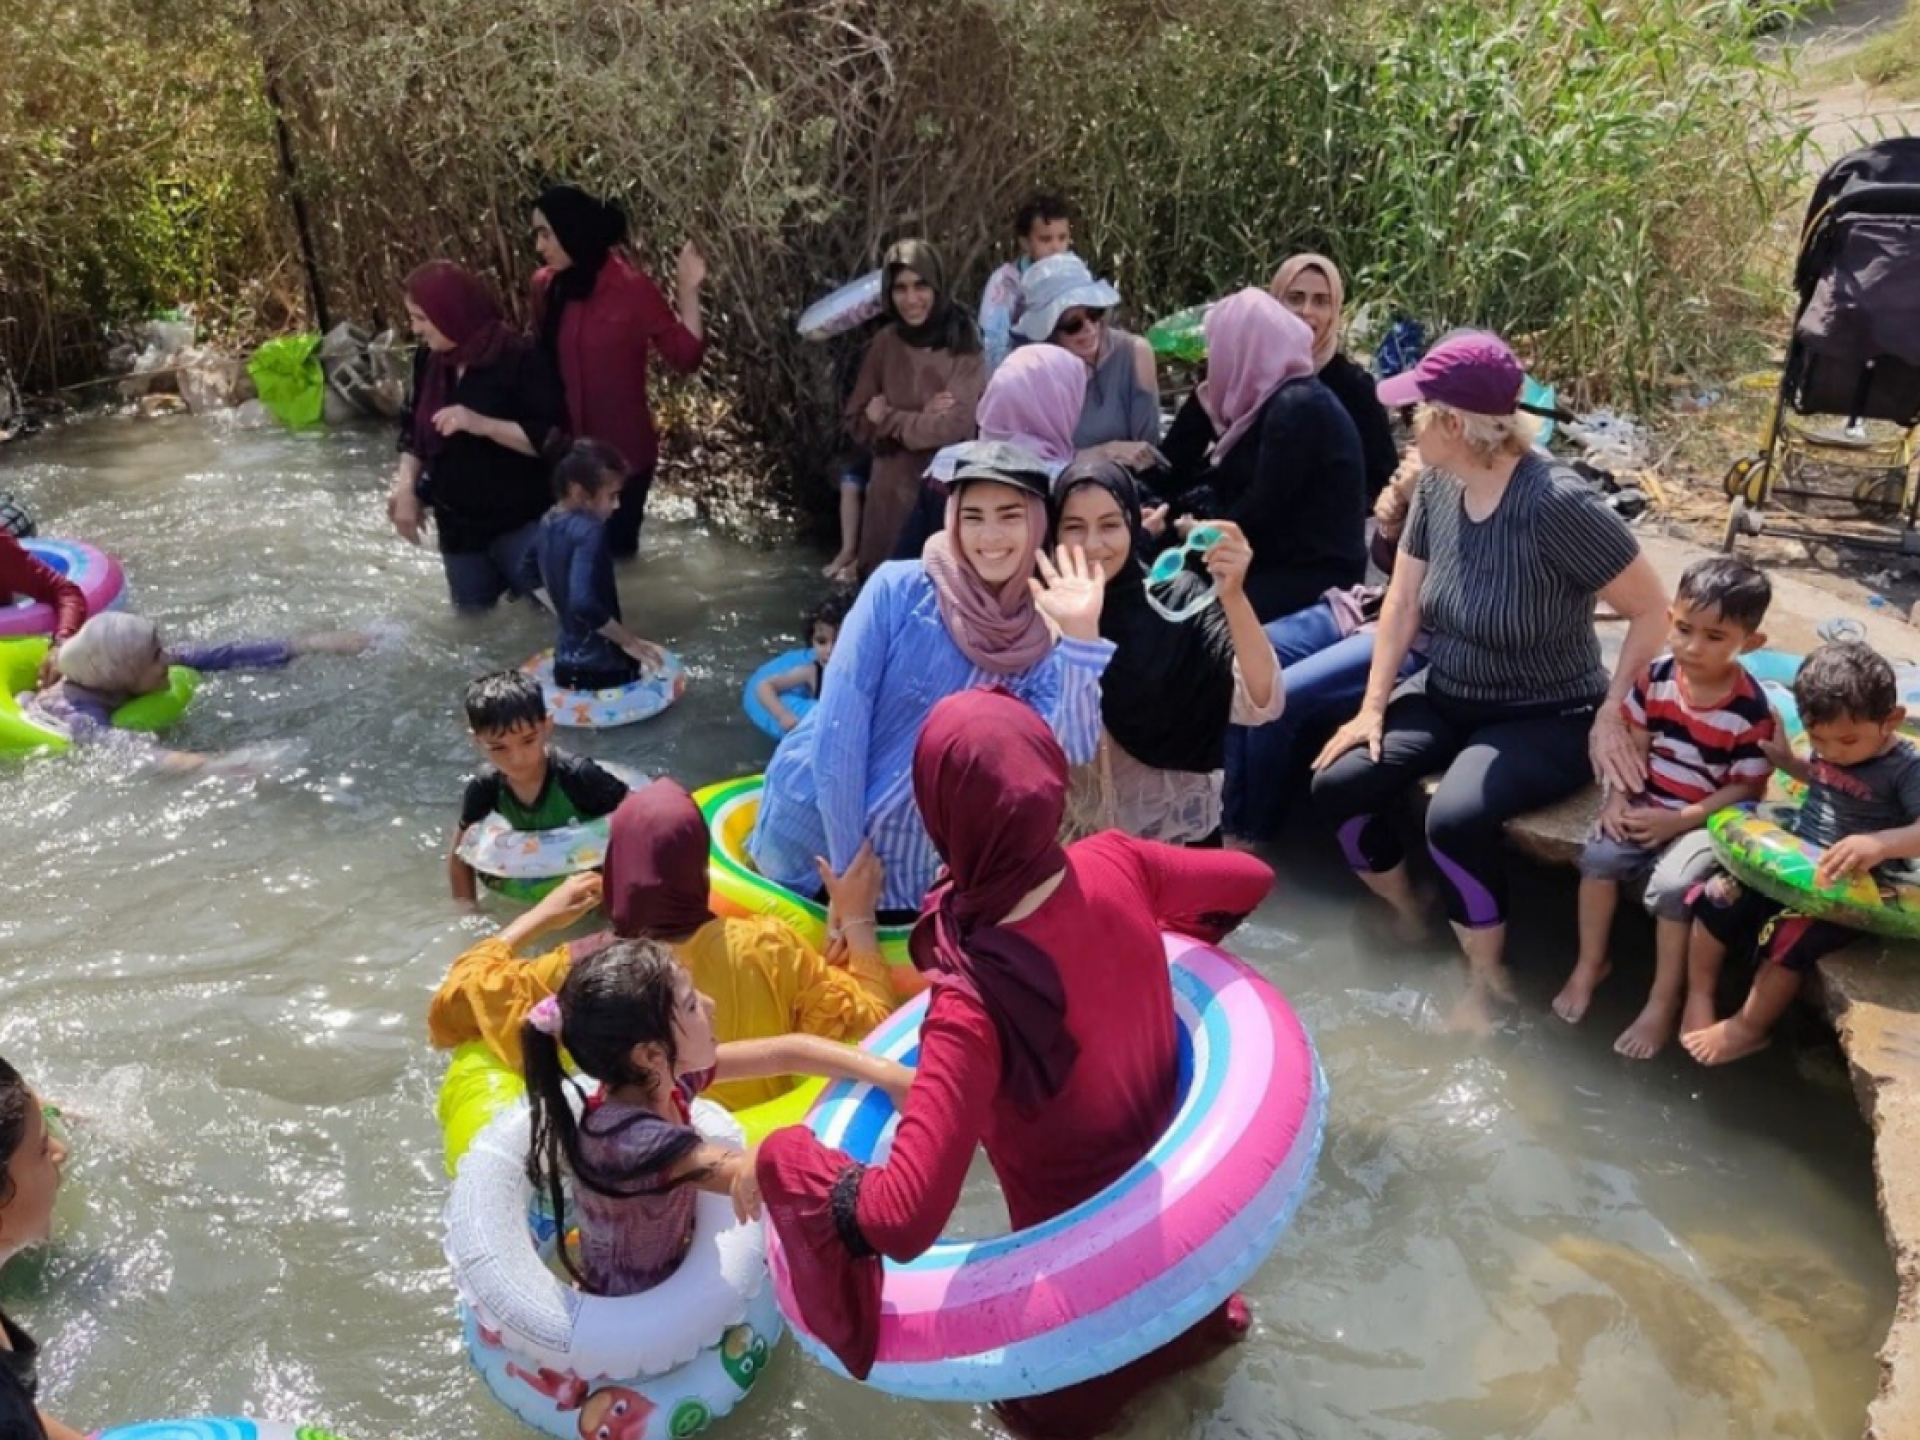 יום כיף במים לילדי הרועים בבקעת הירדן במעין עין סכות